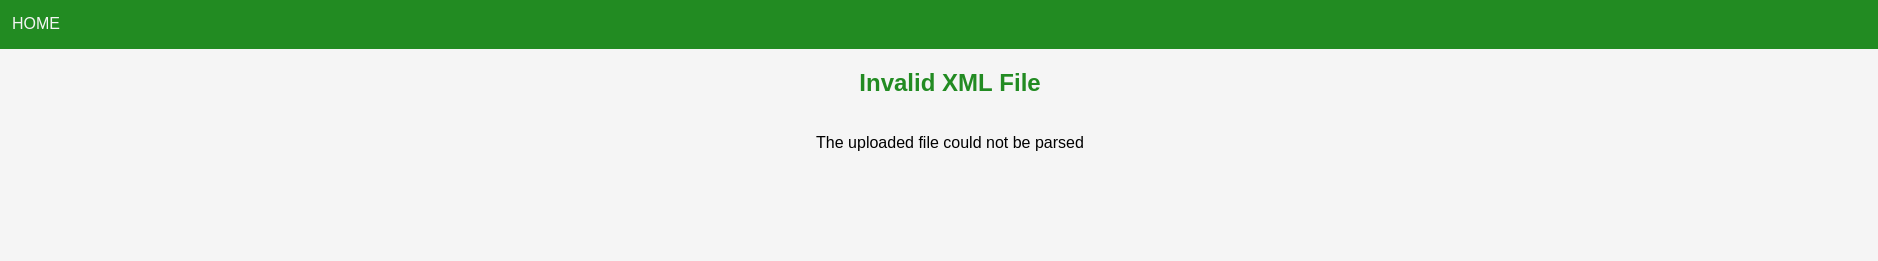 Invalid XML File